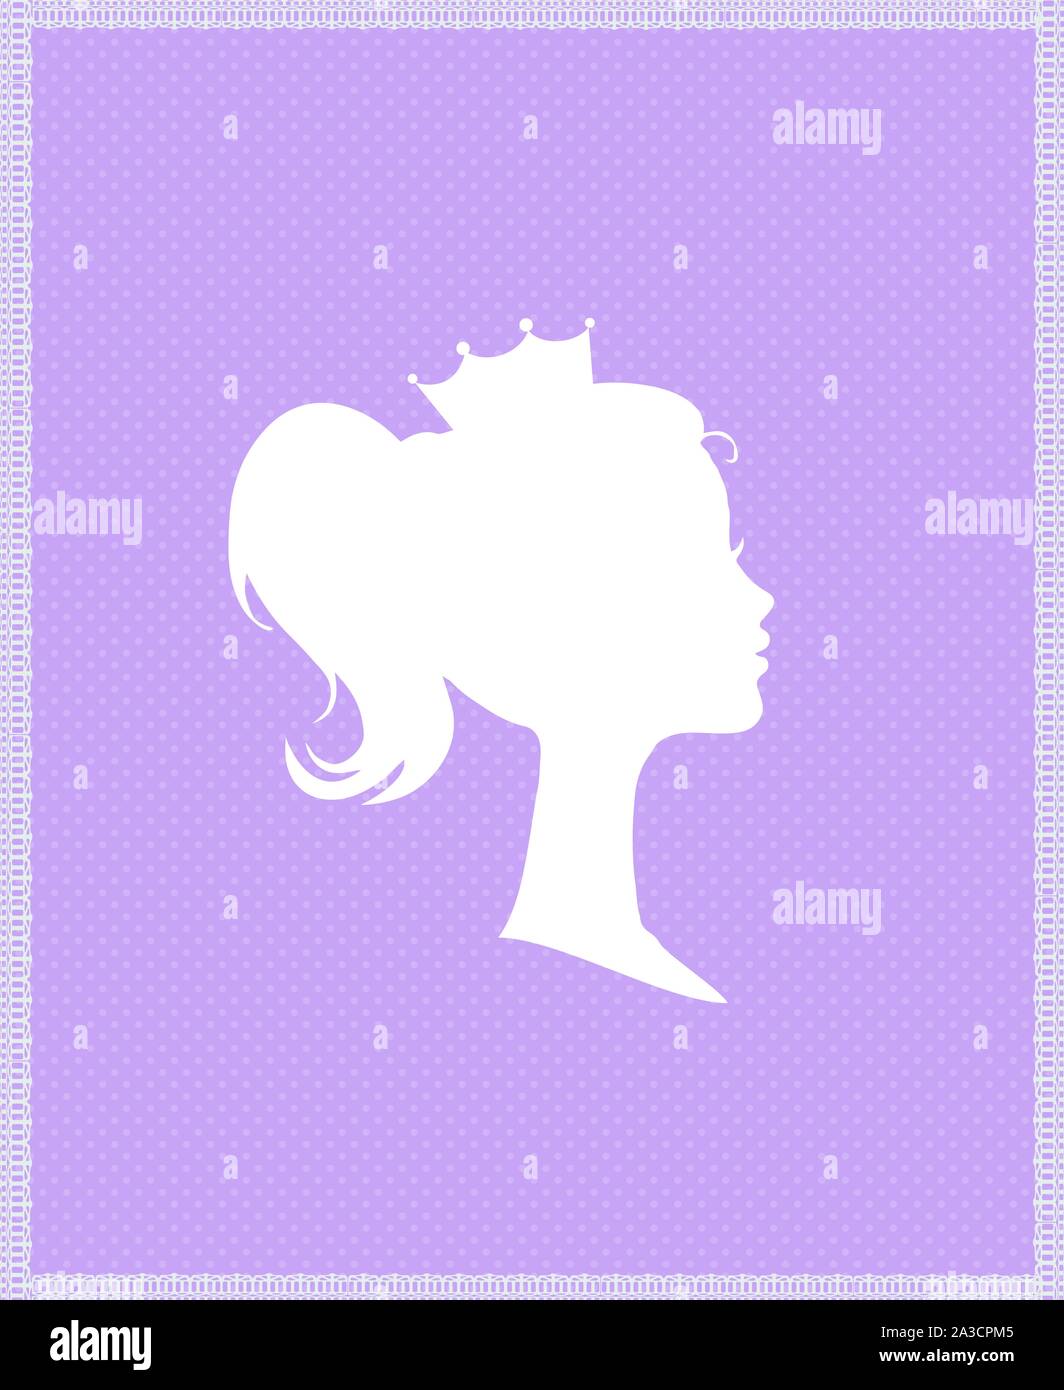 Prinzessin Königin Profil Silhouette mit Krone auf lila Hintergrund mit Typografie Retro Grußkarte, viktorianischen Porträt der Königlichen Person süße Mädchen in Stock Vektor